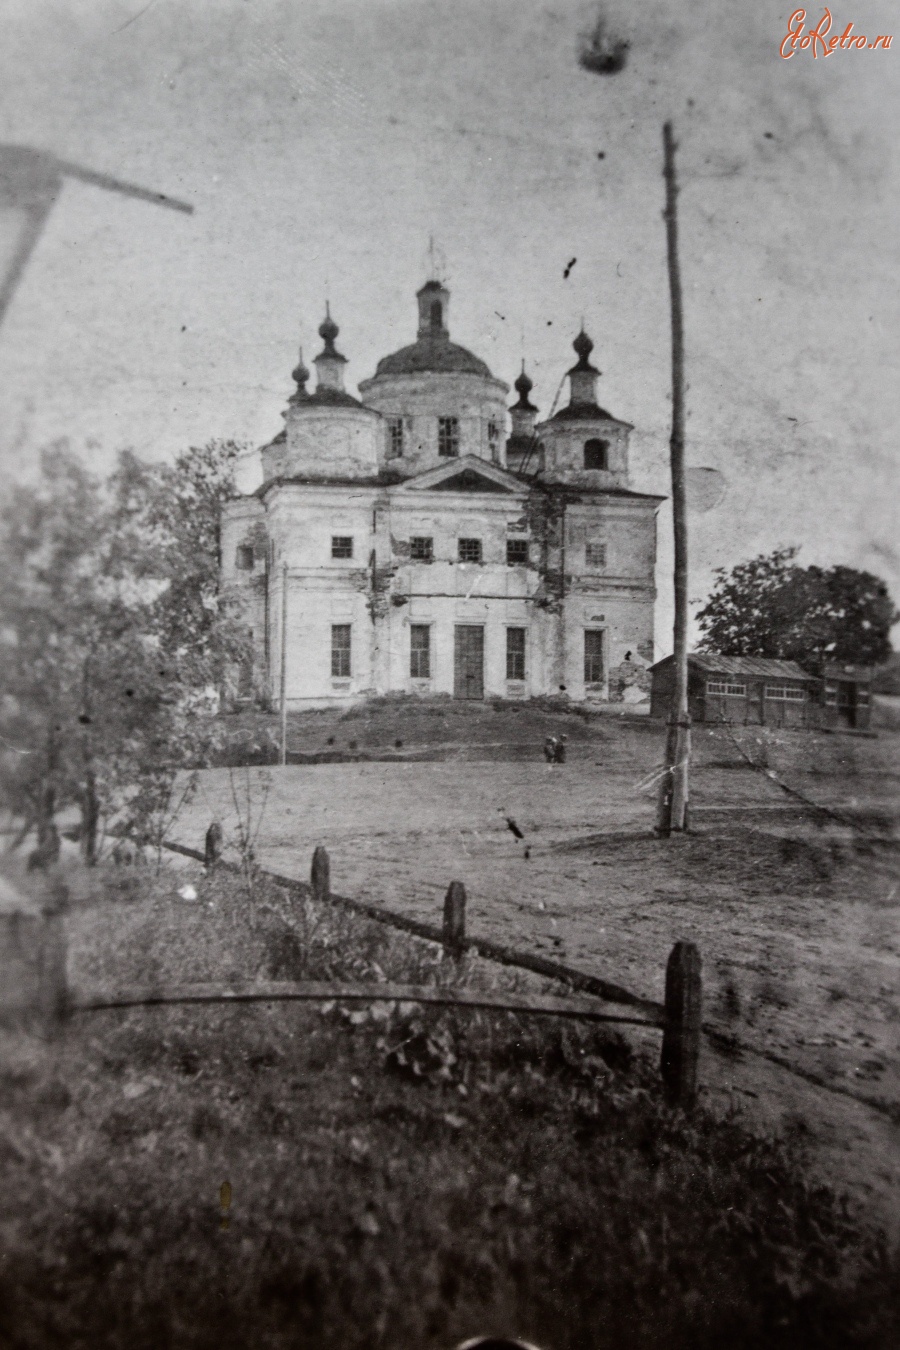 Старый Салтов - Церковь в Старом Салтове